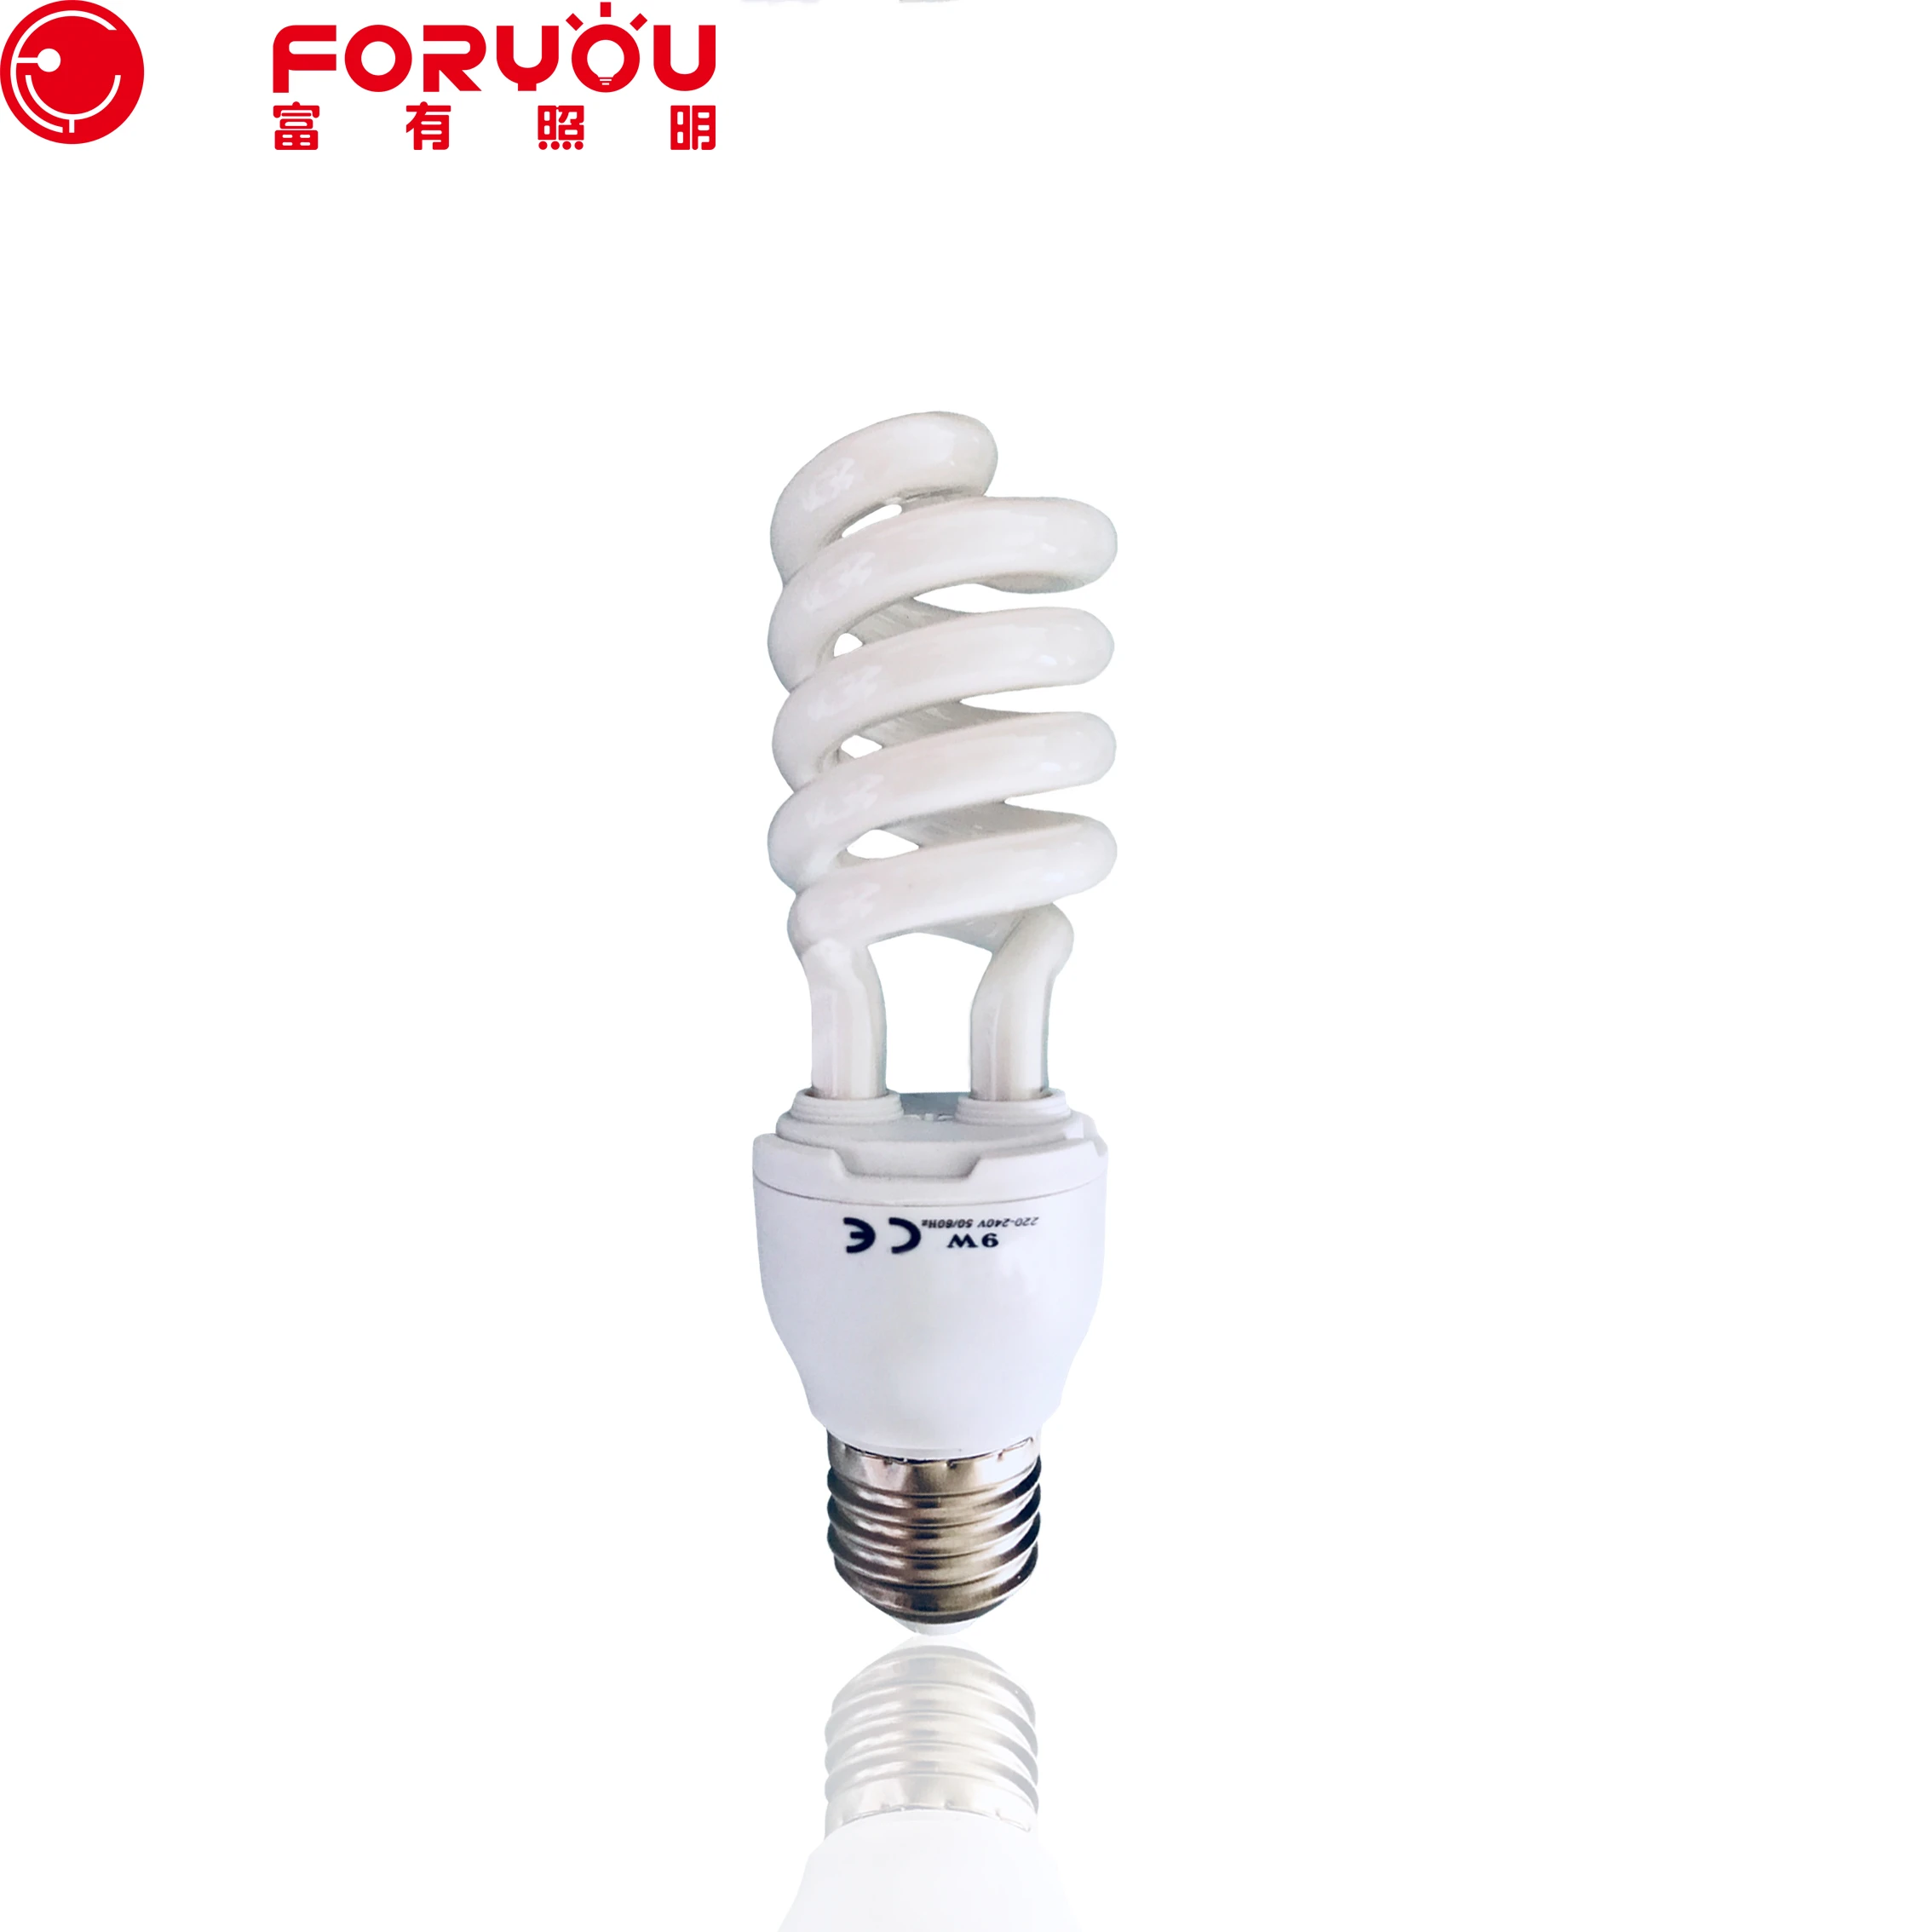 Compact fluorescent lamp E27 half spiral Energy Saver light Bulbs 9w